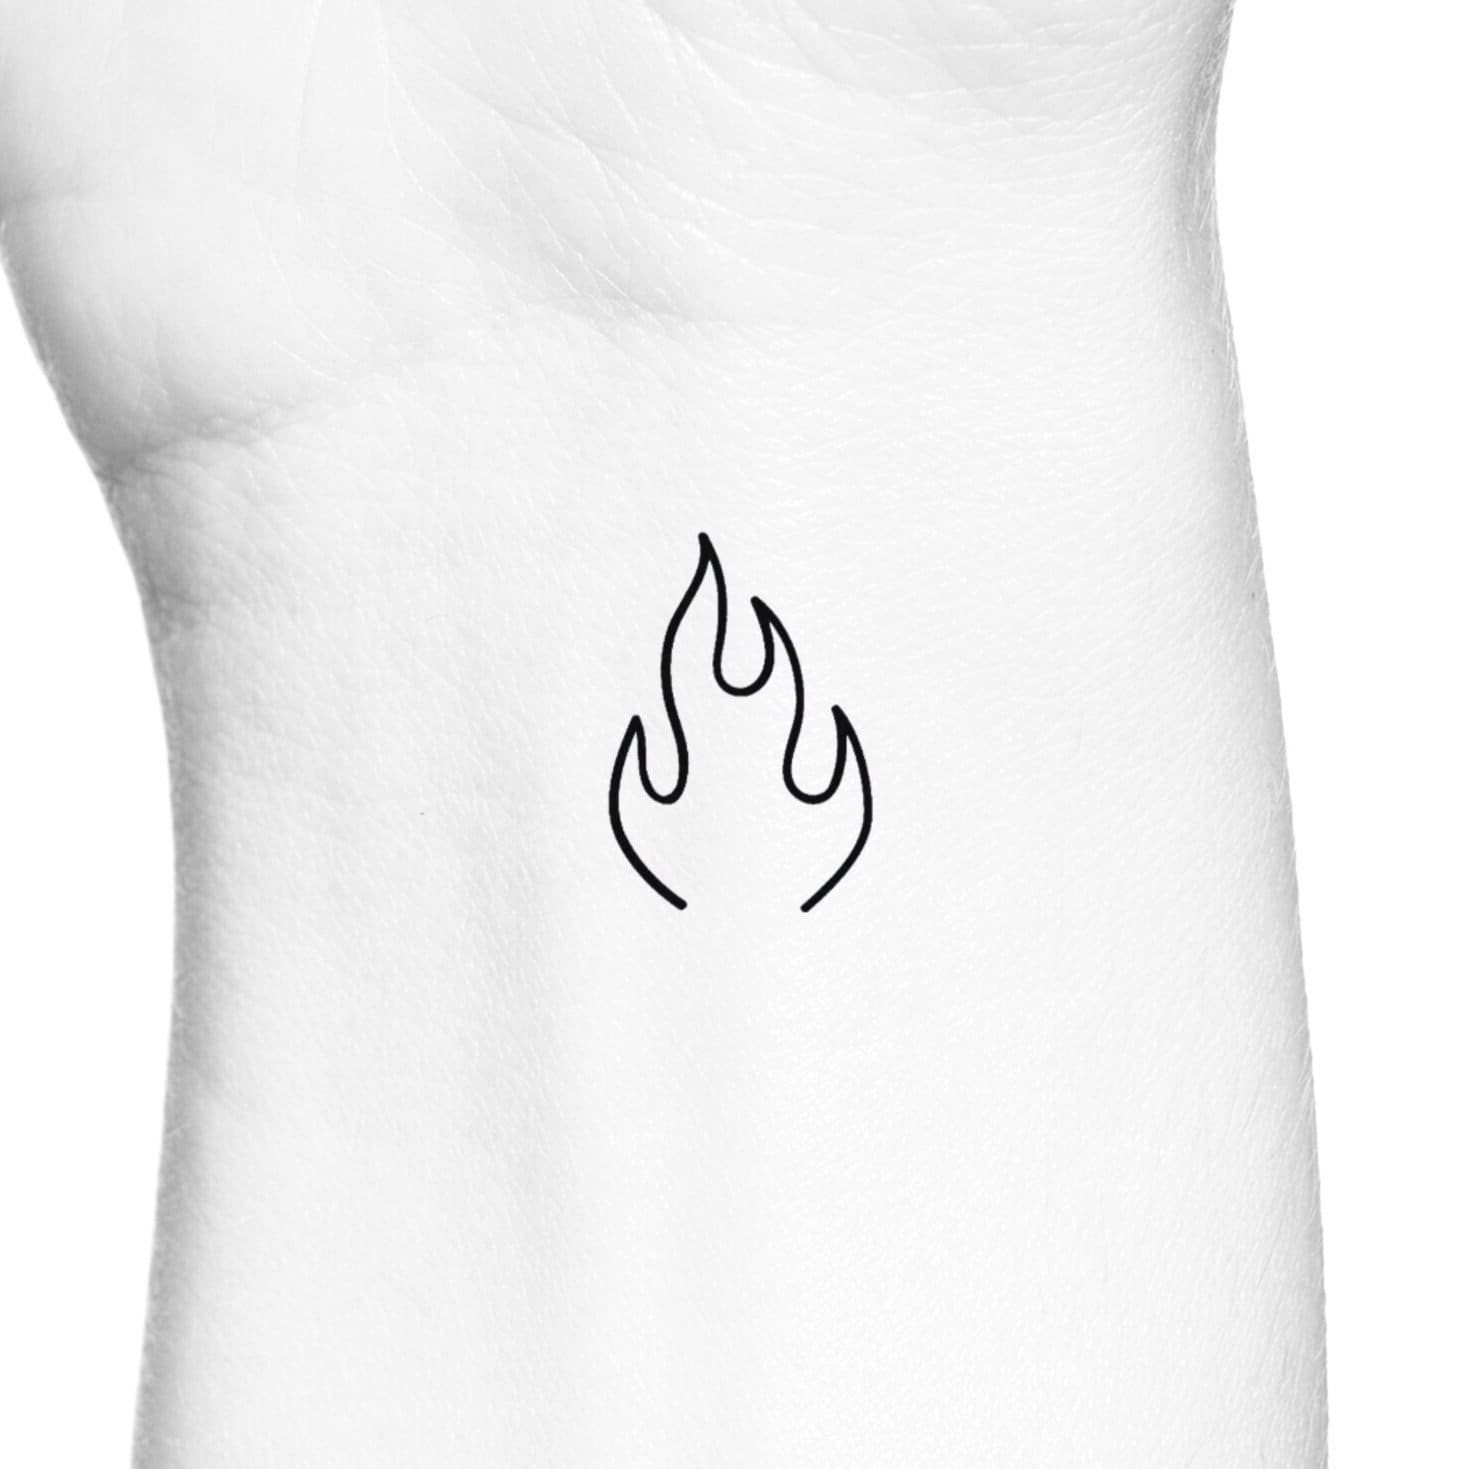 Hand poked minimalist fire tattoo on the wrist